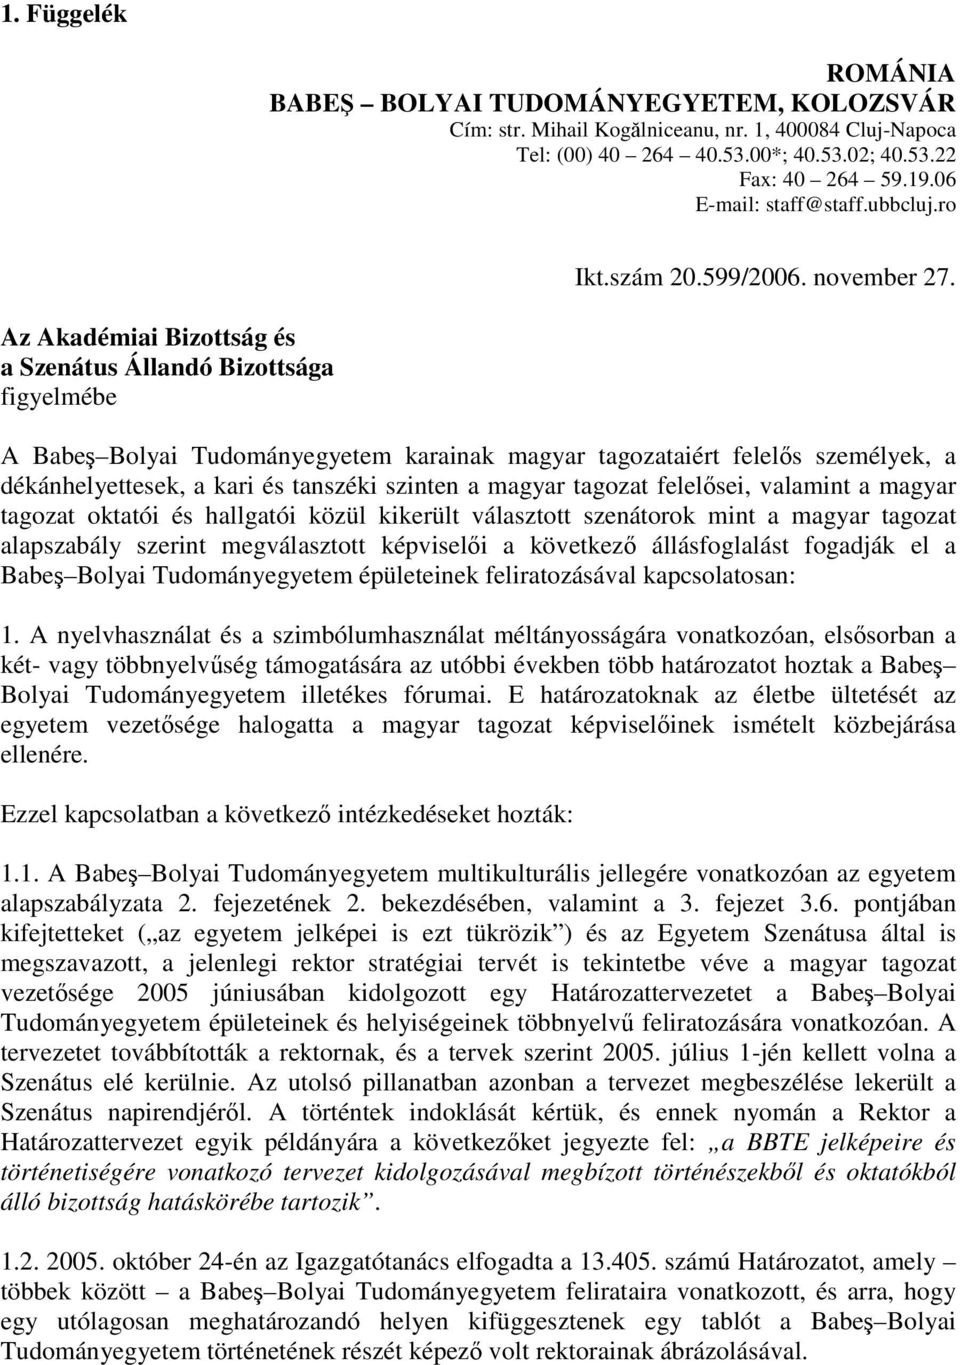 A Babeş Bolyai Tudományegyetem karainak magyar tagozataiért felelős személyek, a dékánhelyettesek, a kari és tanszéki szinten a magyar tagozat felelősei, valamint a magyar tagozat oktatói és